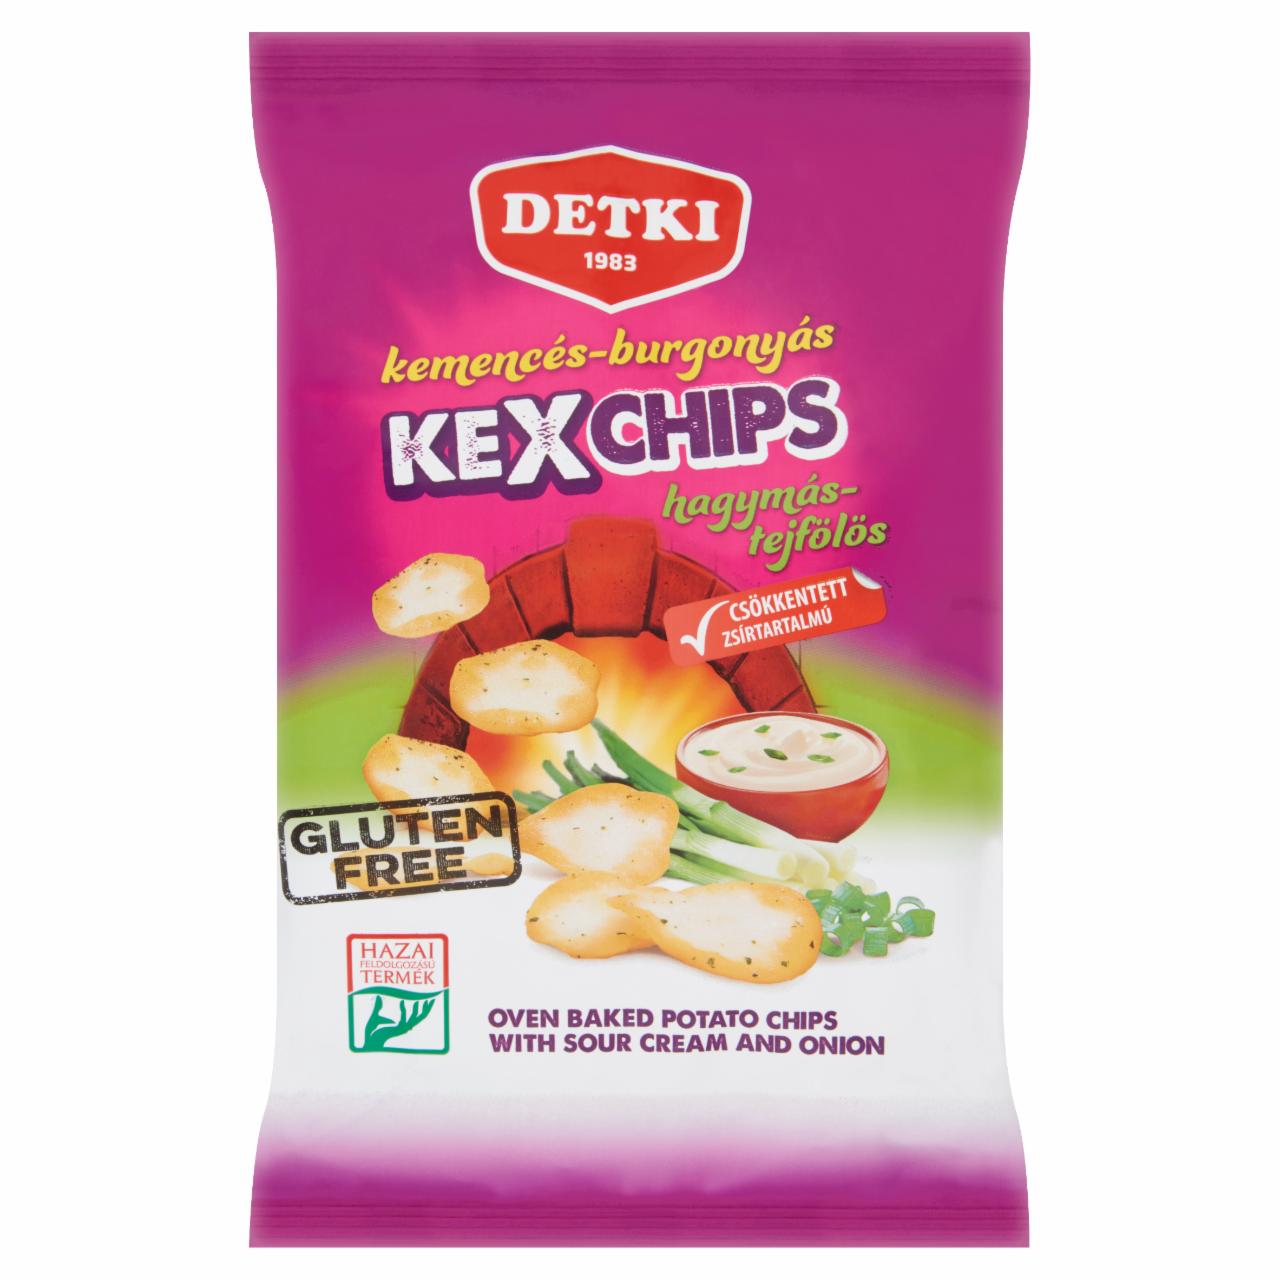 Képek - Detki Kexchips hagymás-tejfölös kemencés-burgonyás chips 75 g